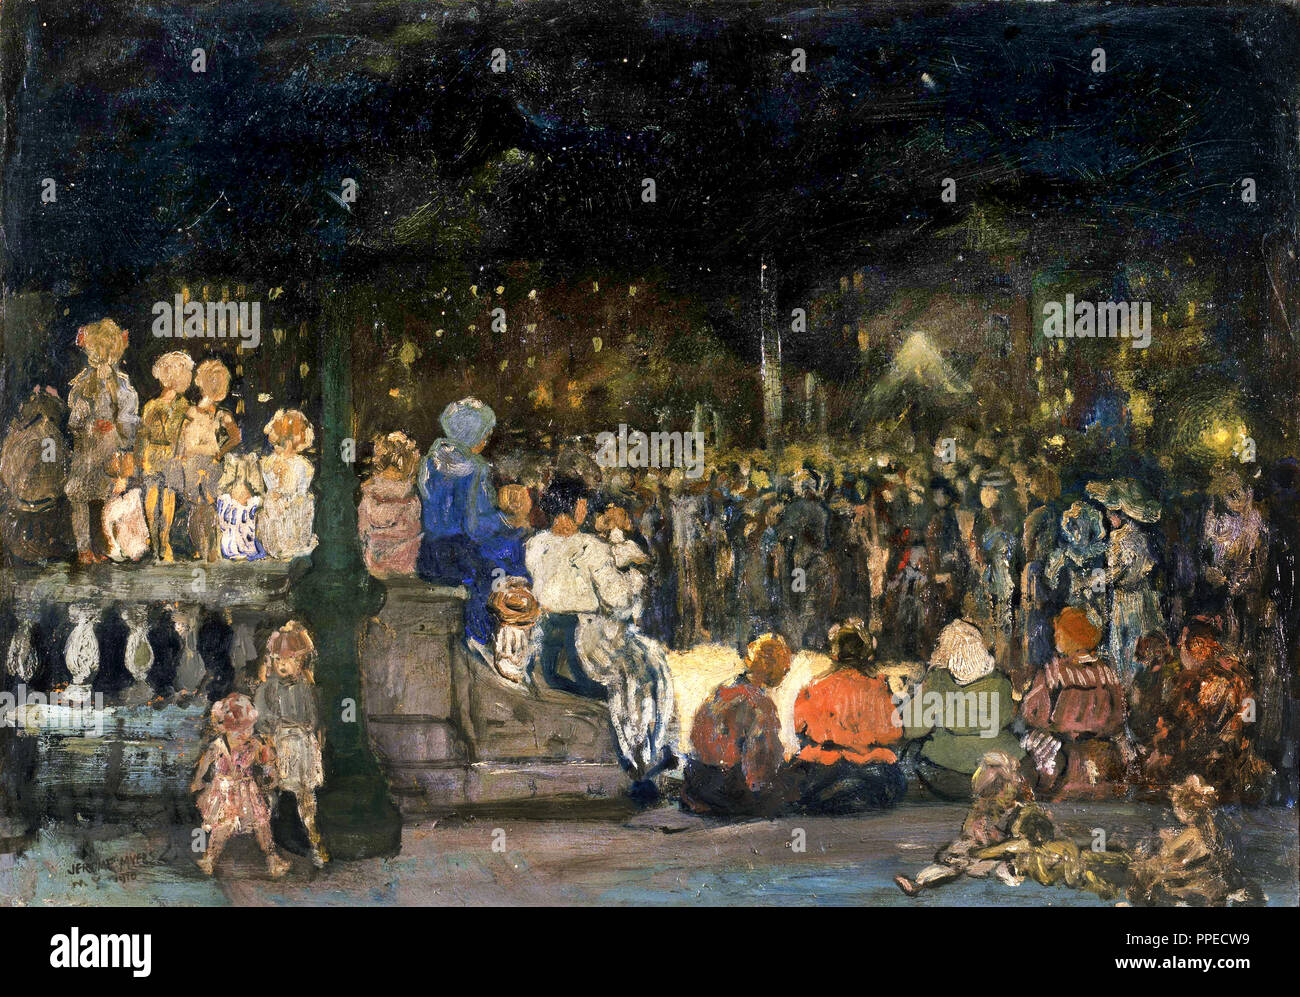 Jerome Myers, Band Concert nuit 1910 ; mise à jour 1916 huile sur carton. Phillips Collection, Washington, D.C., USA. Banque D'Images